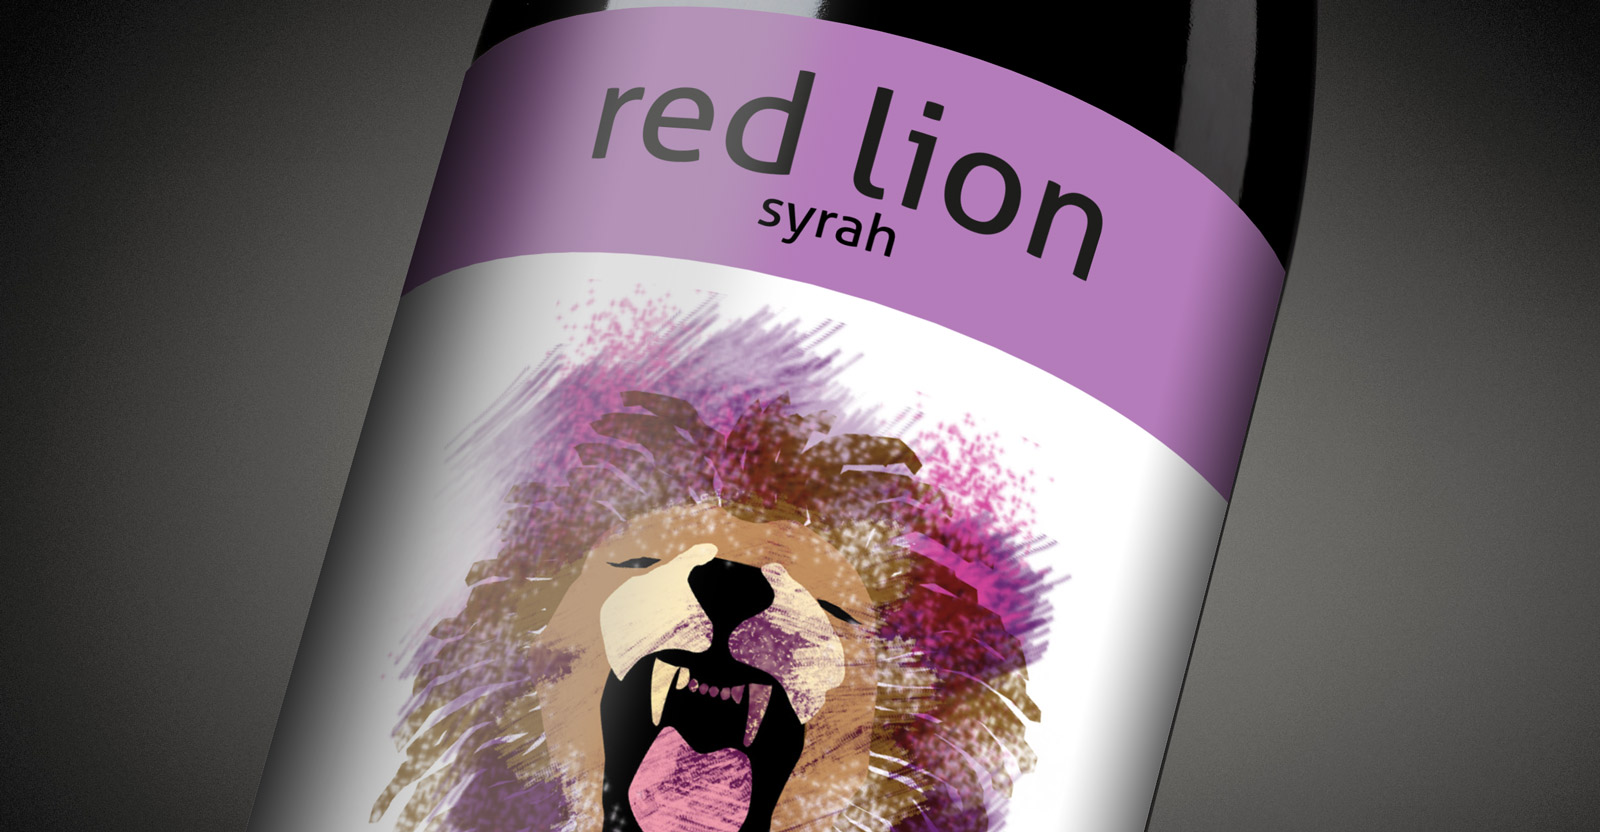 Diseño gráfico y creativo de etiquetas y packaging de vino para gama de vinos gourmet